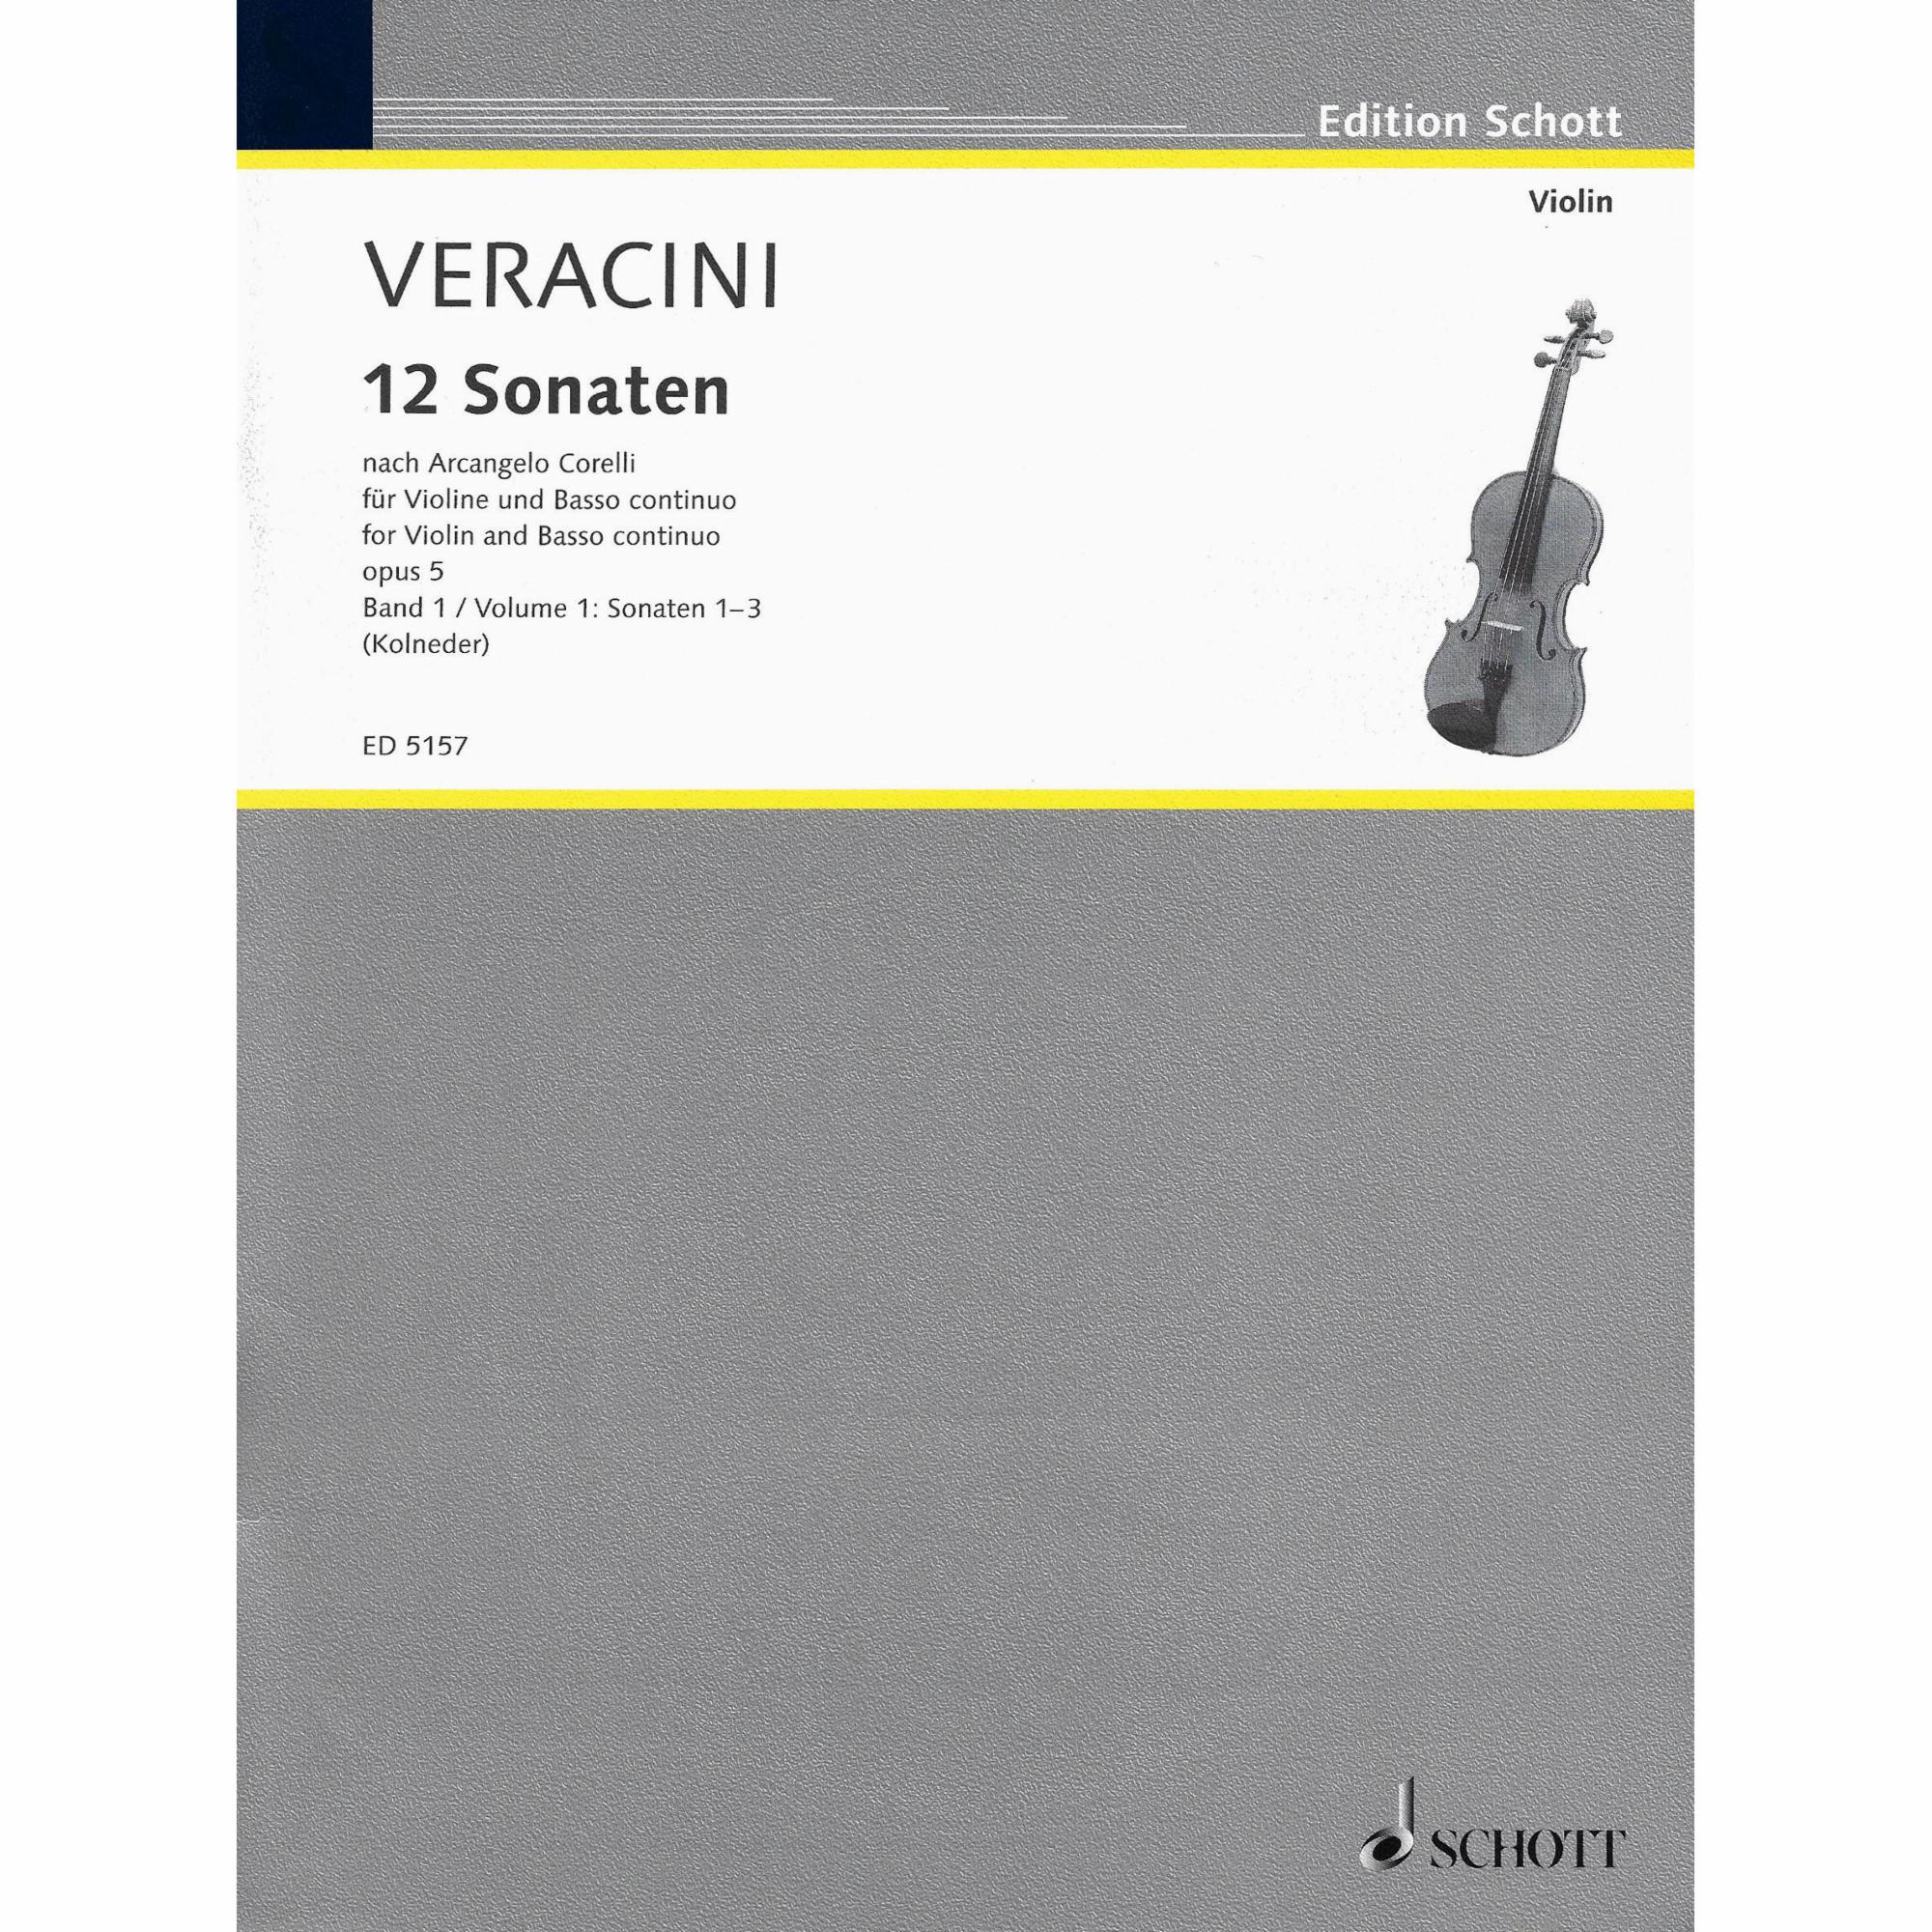 Corelli/Veracini -- 12 Sonatas, Op. 5, Vols. 1-4 for Violin and Basso Continuo